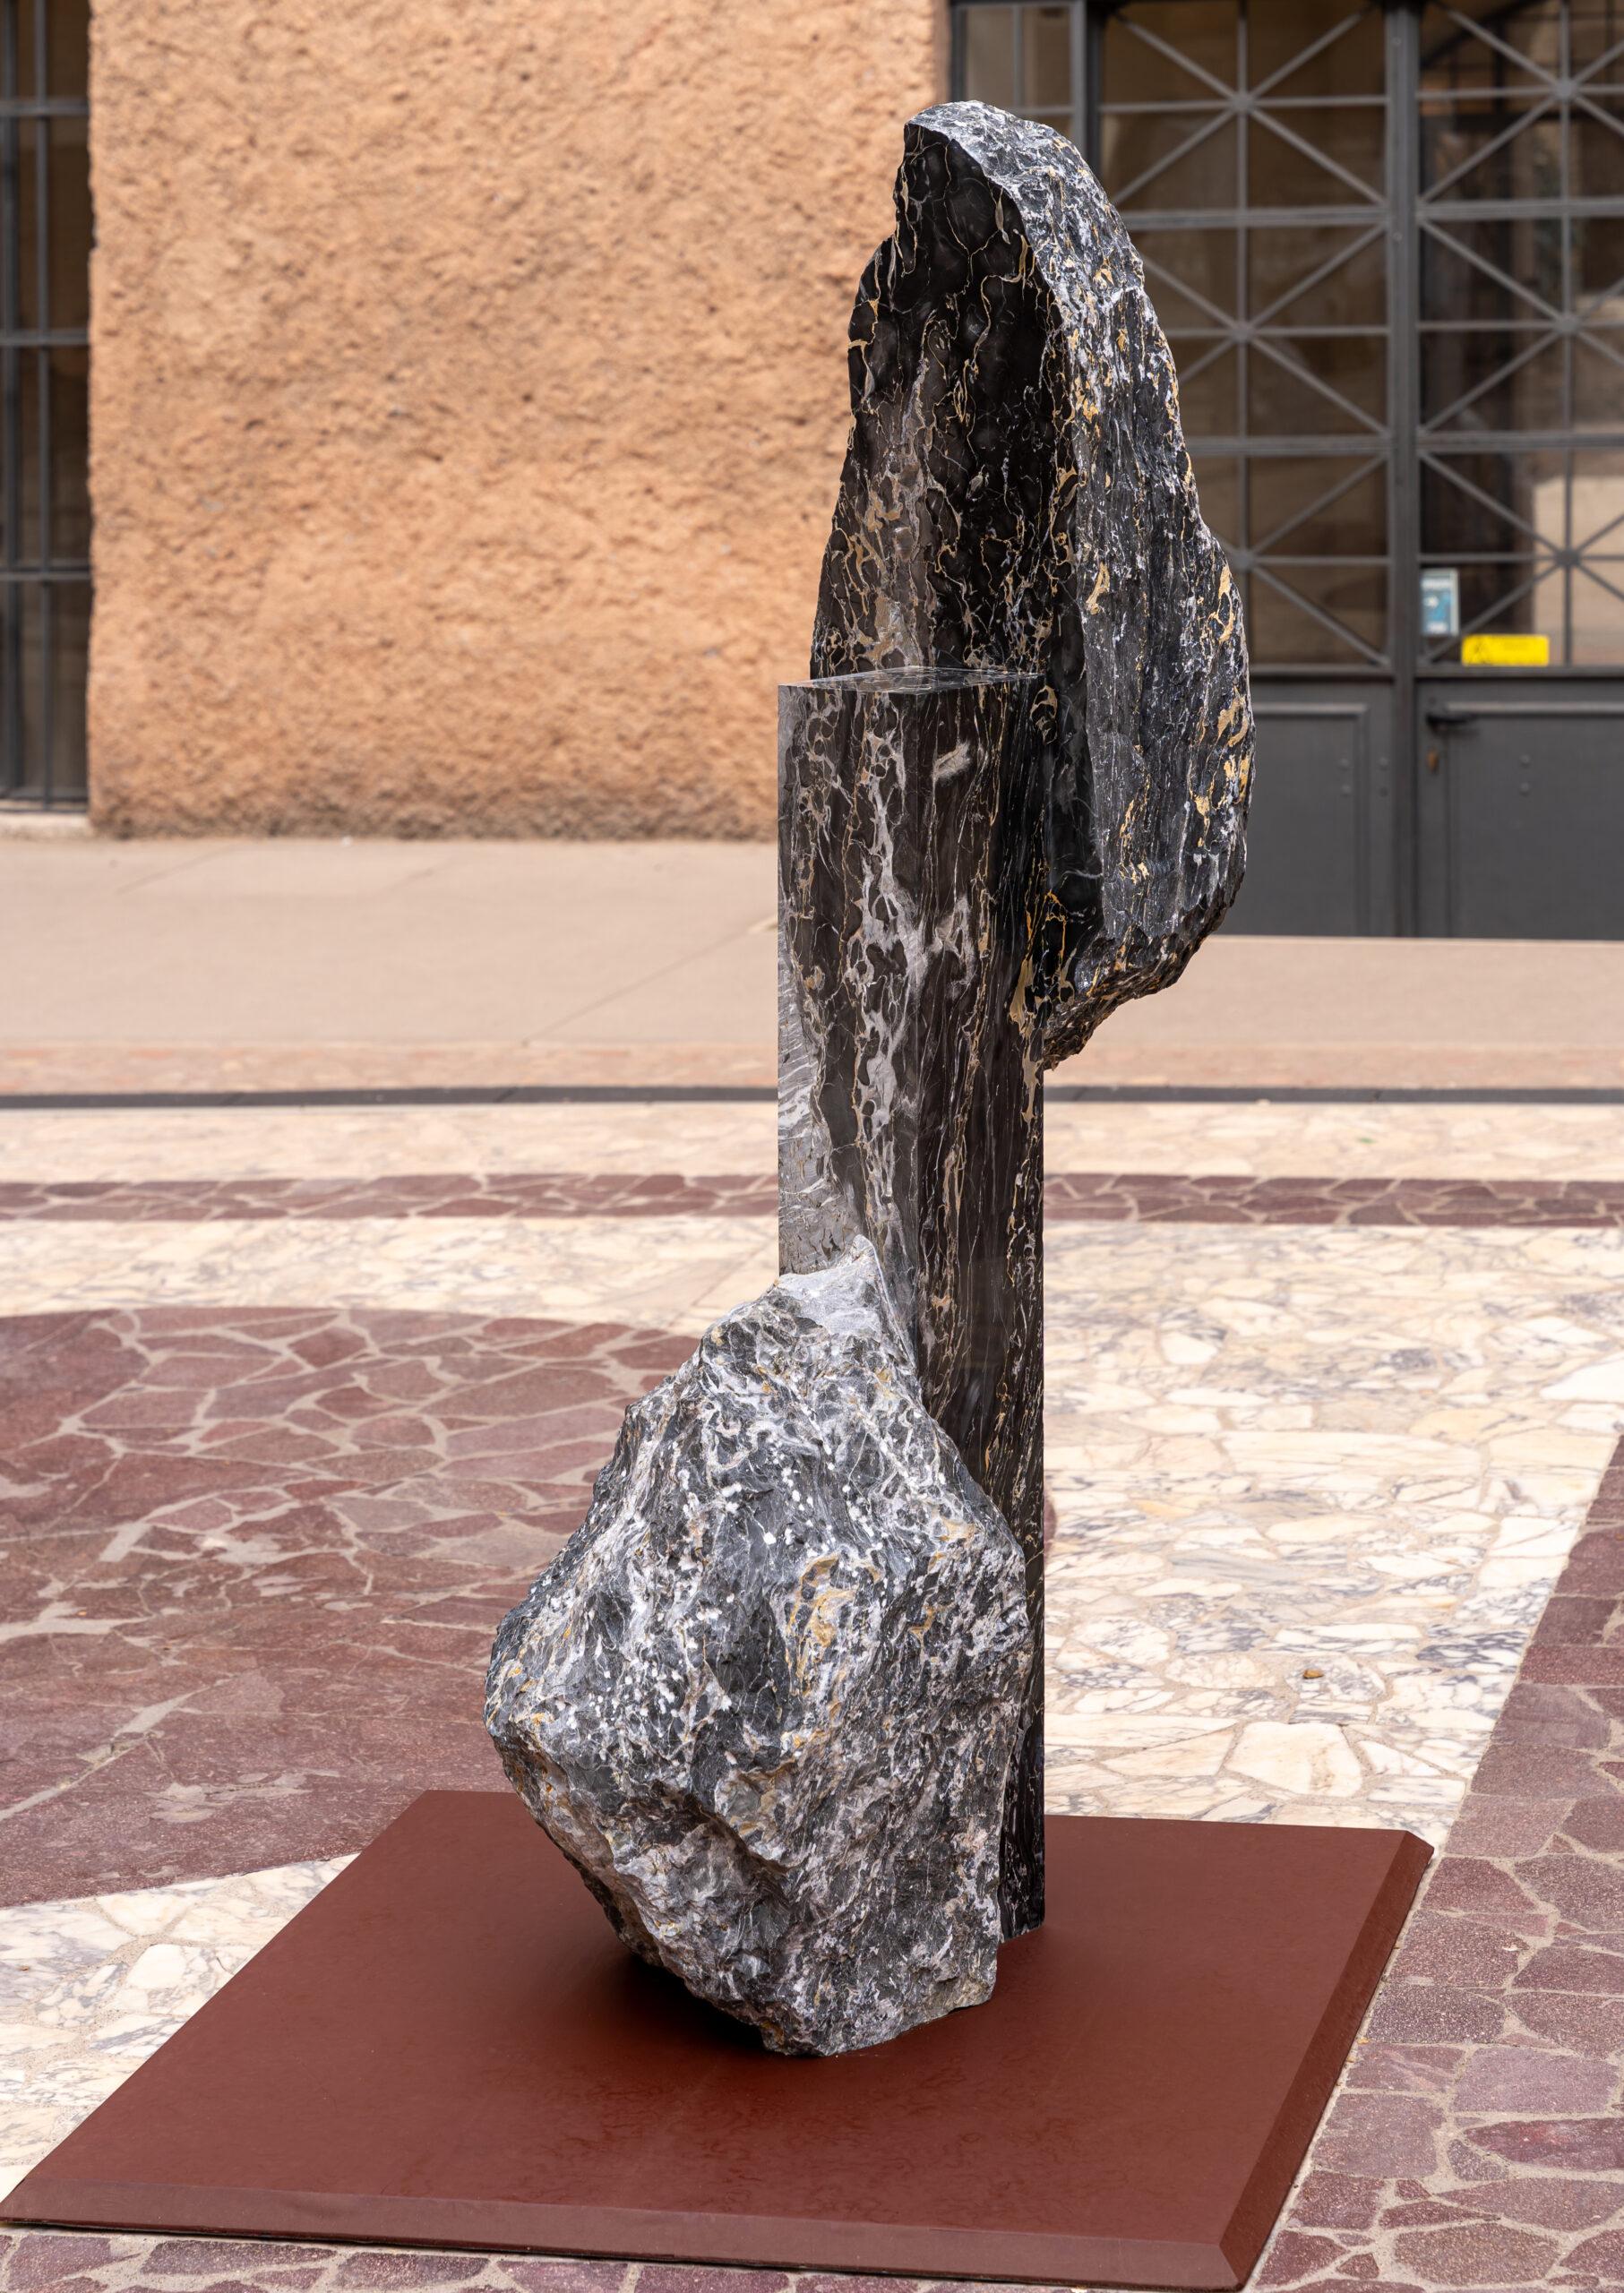 Korè-Portovenere Portoro ist eine einzigartige monumentale Skulptur des zeitgenössischen Künstlers Mattia Bosco. Die Skulptur ist aus Portovenere-Portoro-Marmor gefertigt und hat die Maße 164,5 × 45 × 79 cm (64,8 × 17,7 × 31,1 in). 

Diese Arbeit